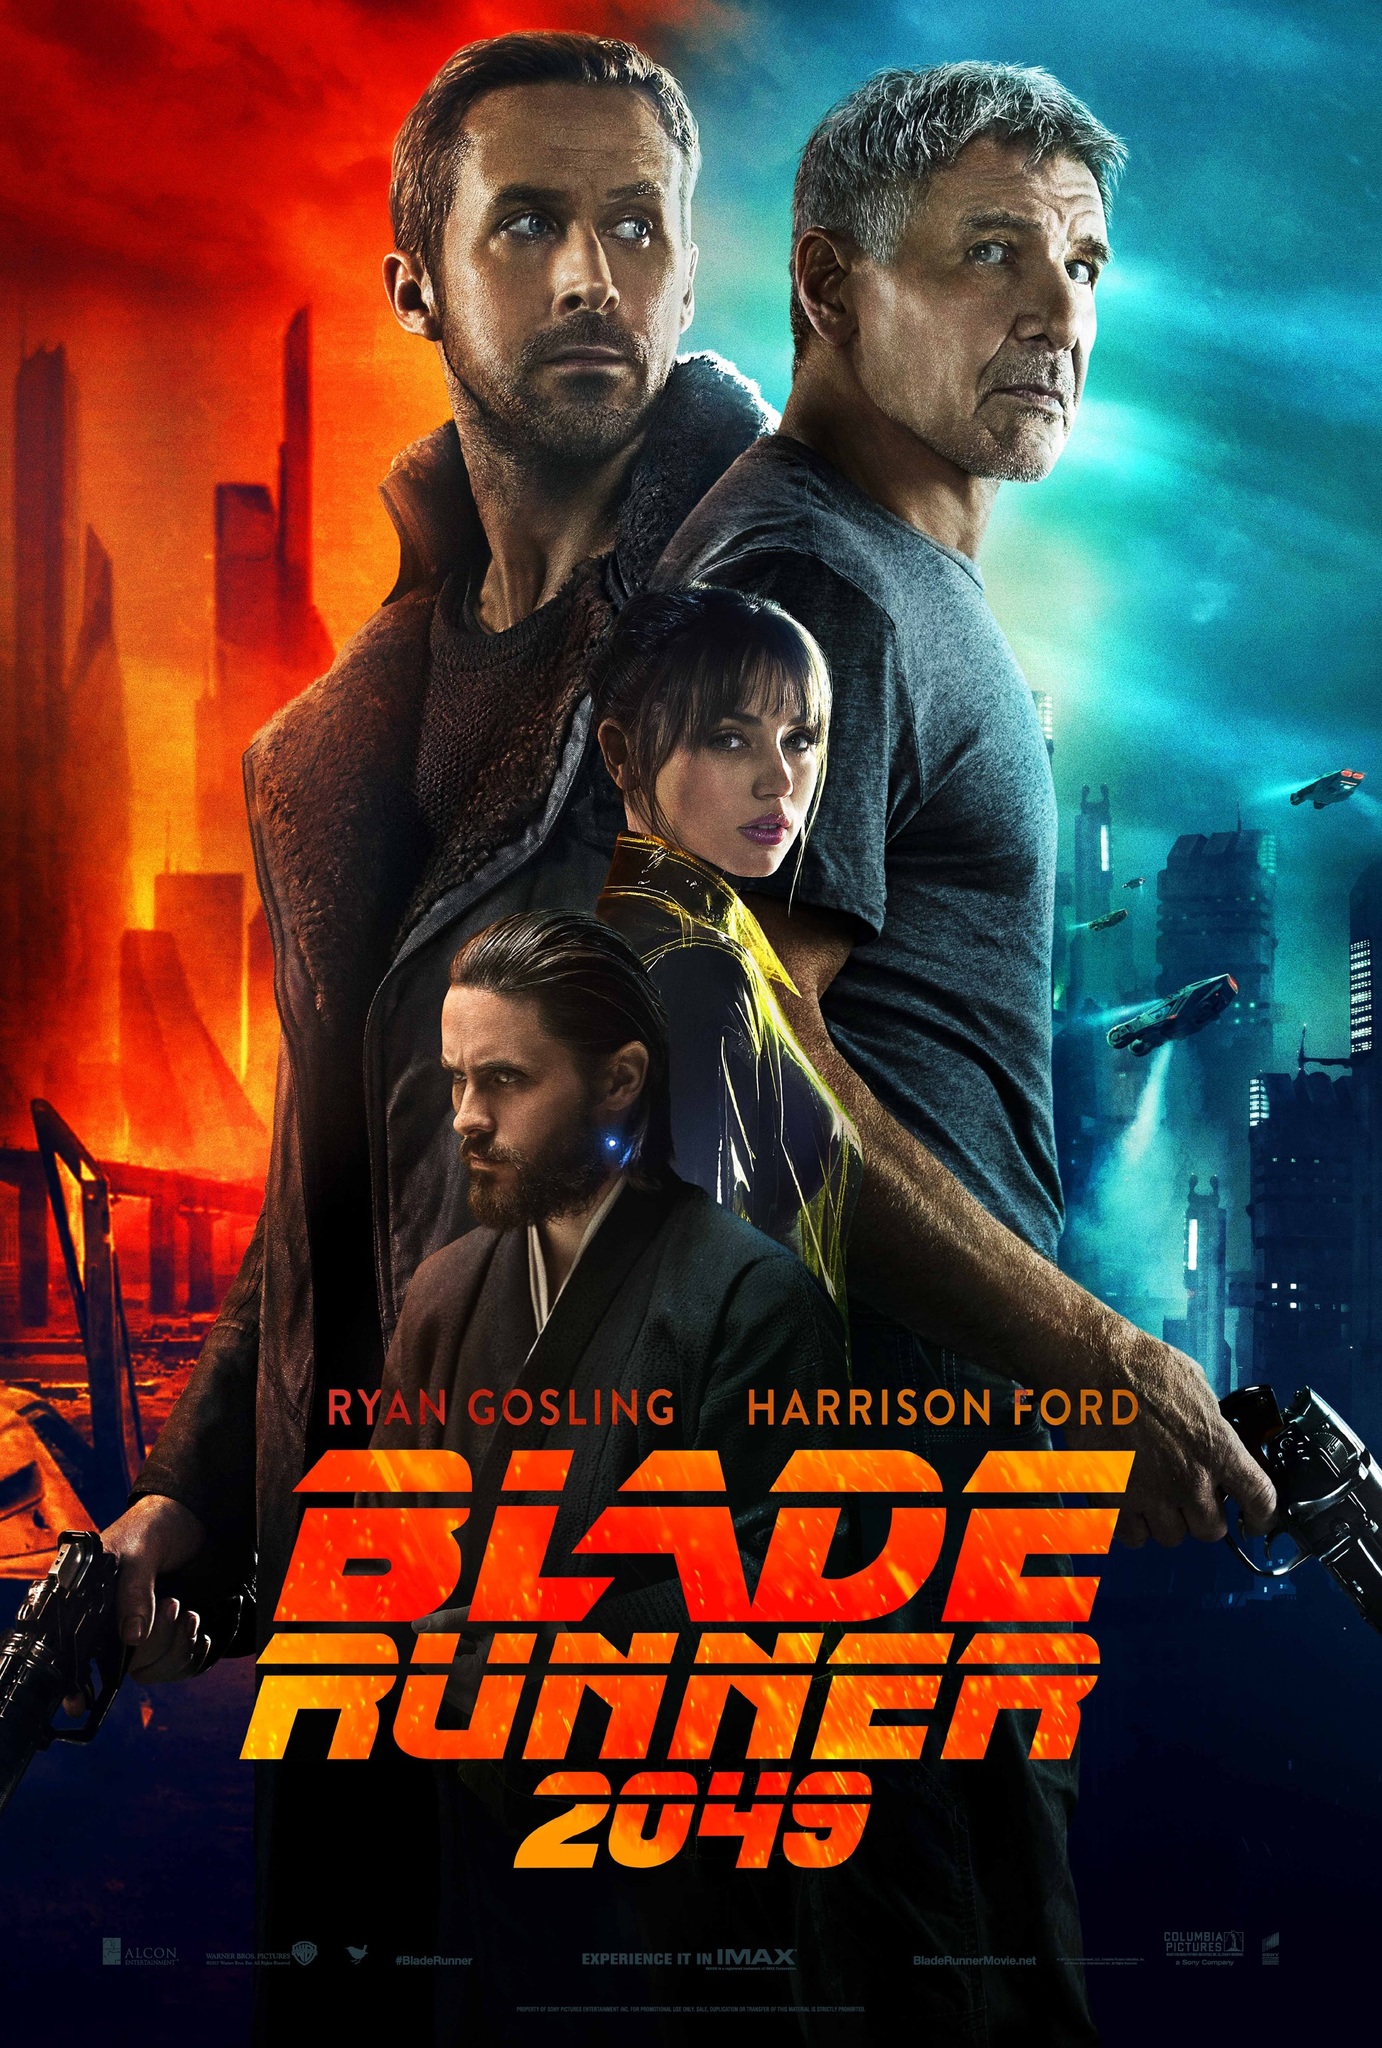 Bladerunner 2049 movie poster